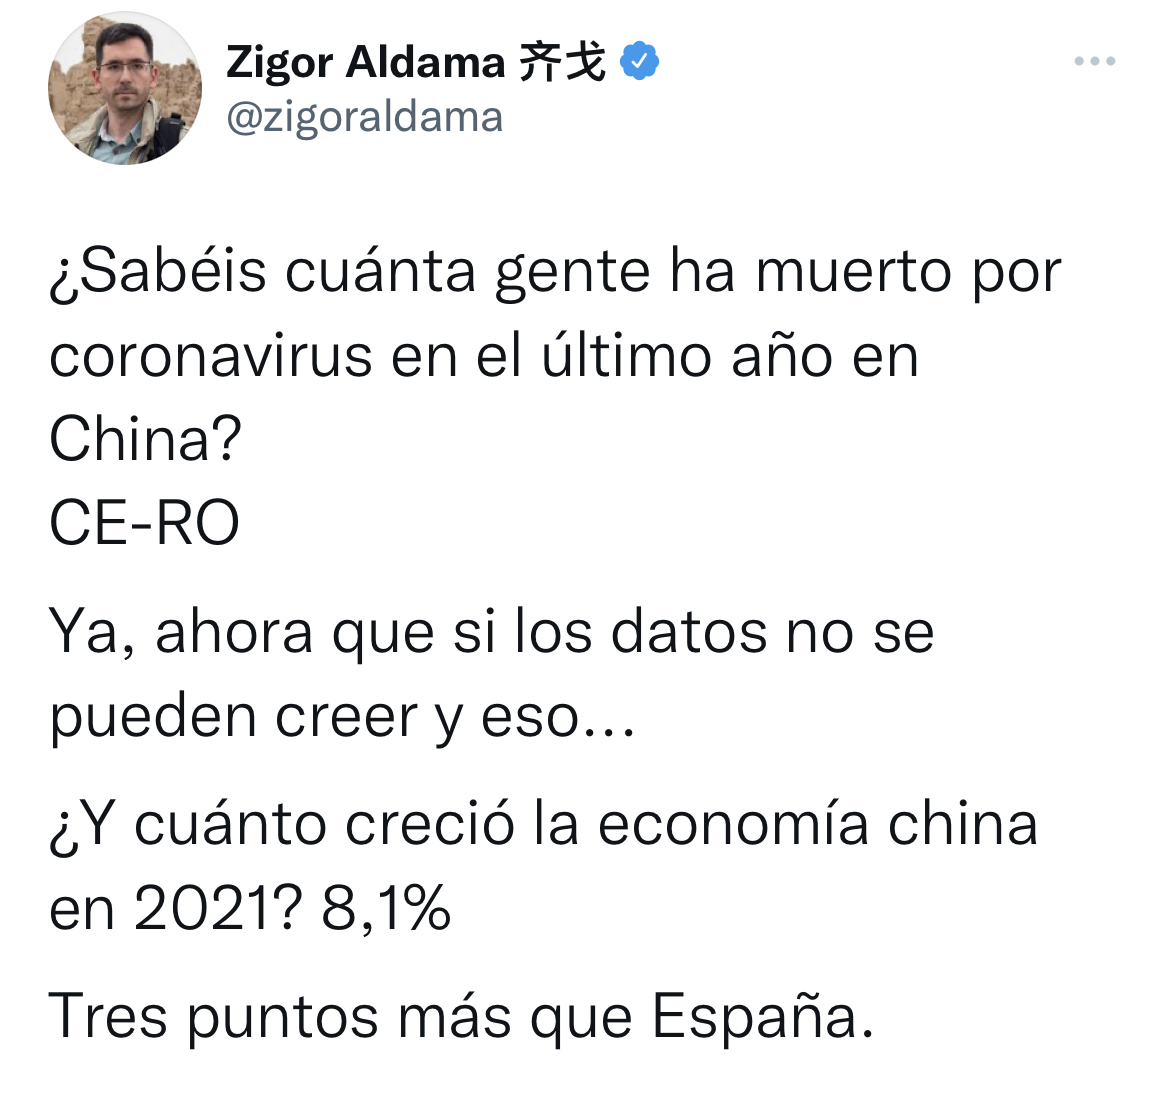 fy Zigor Aldama 5X ©

¥ @zigoraldama

;Sabéis cuanta gente ha muerto por
coronavirus en el Ultimo ano en
China?

CE-RO

Ya, ahora que si los datos no se
pueden creer y eso...

¢Y cuanto crecio6 la economia china
en 20217 8,1%

Tres puntos mas que Espana.